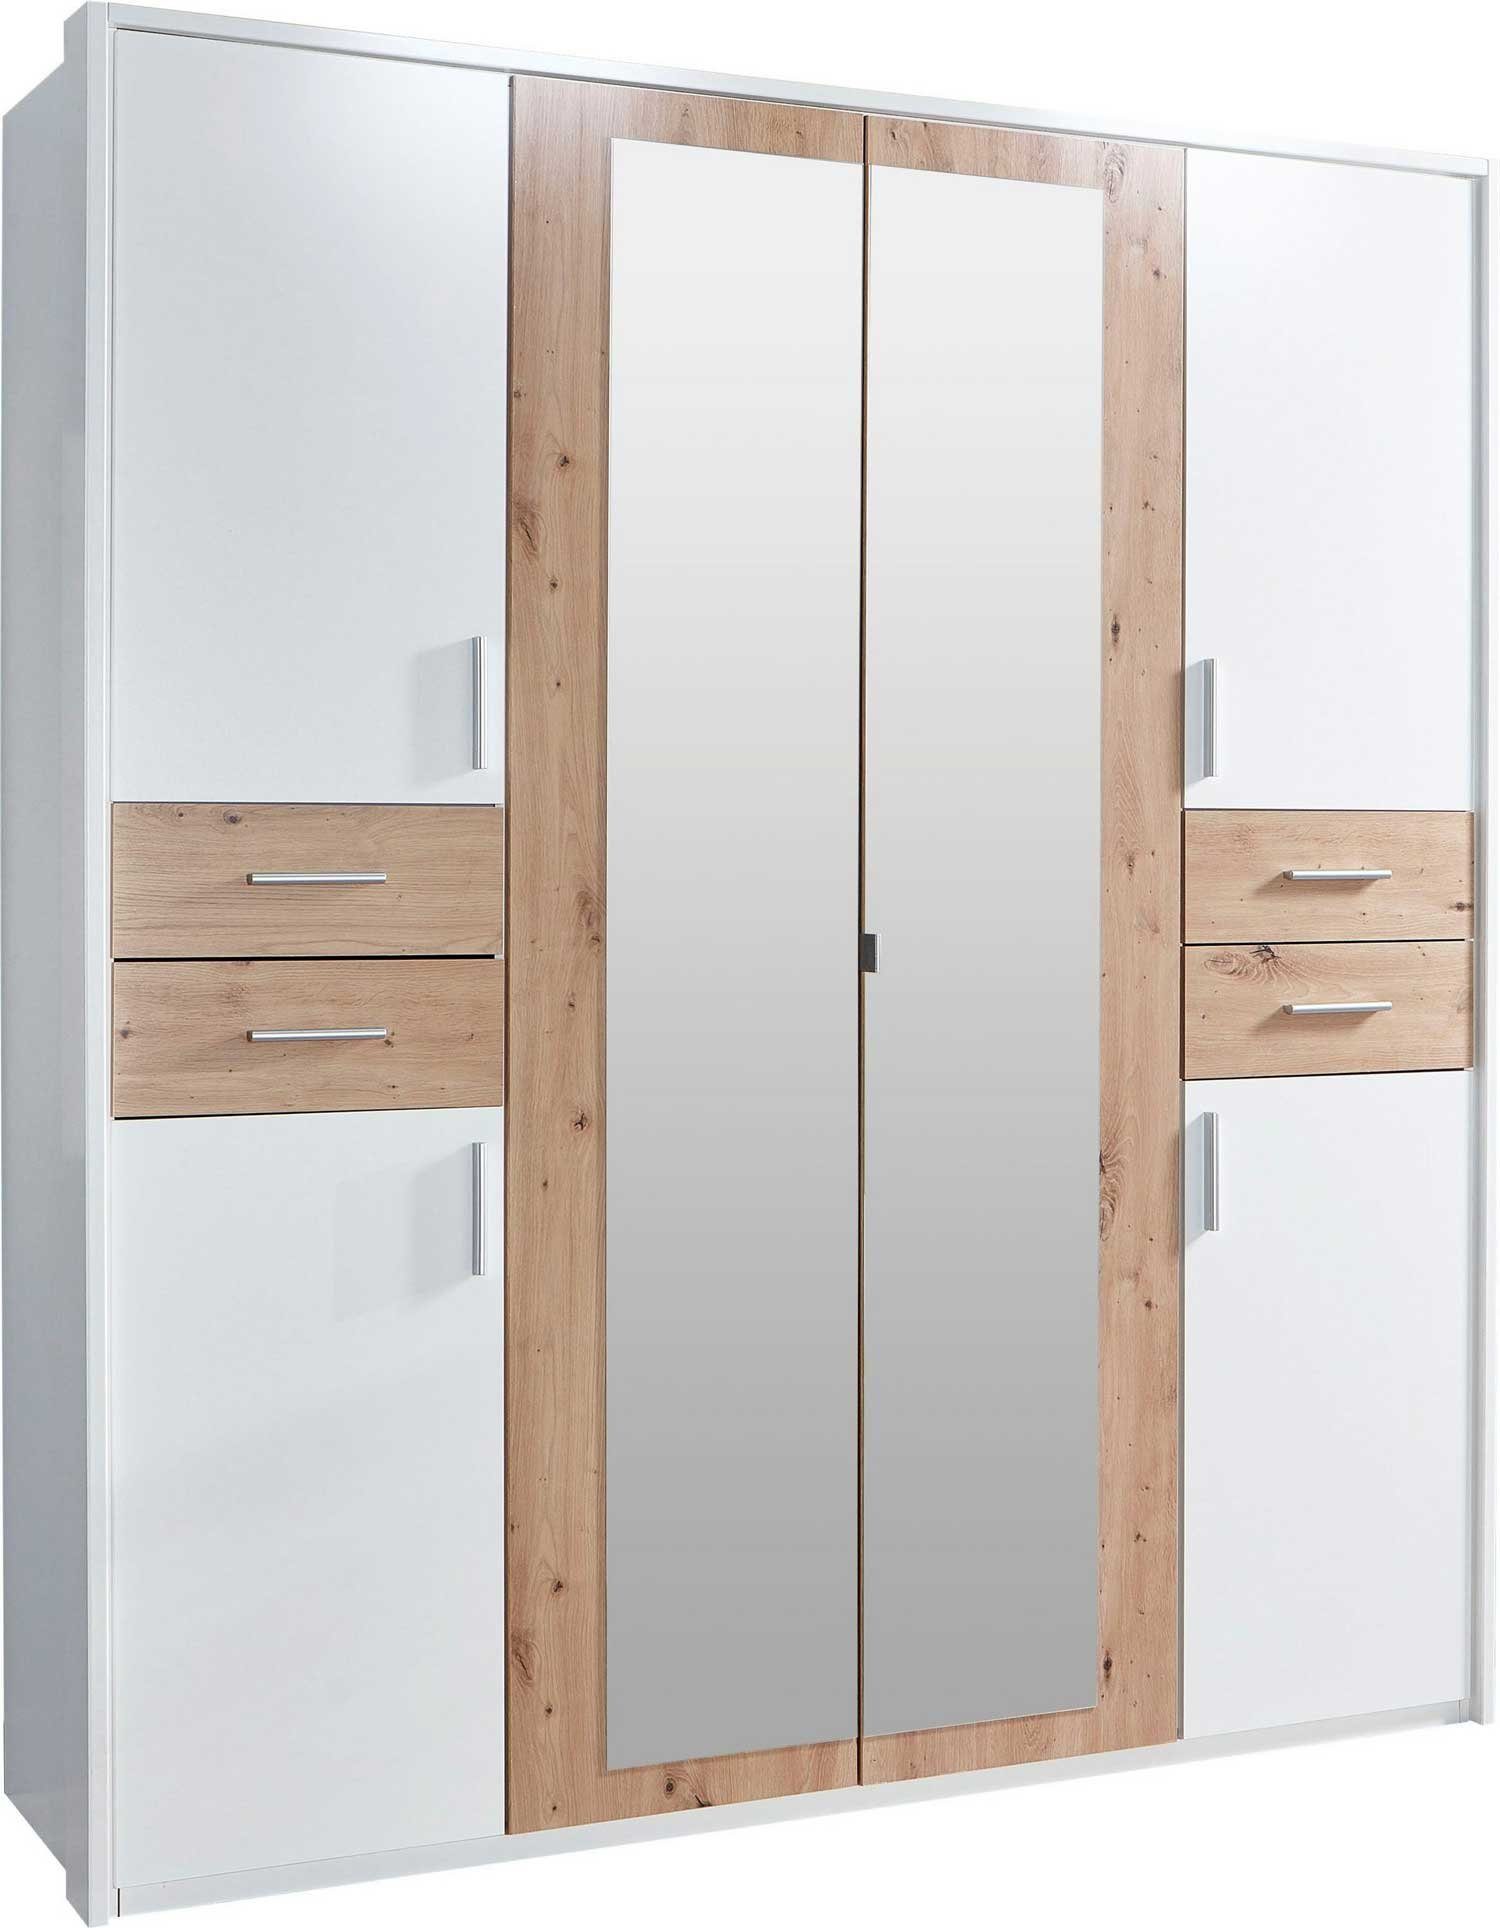 Wimex Kleiderschrank Vegas (Vegas, 6-türiger Kleiderschrank mit Spiegel)  6-türig 183cm weiß artisan eiche mit Spiegel